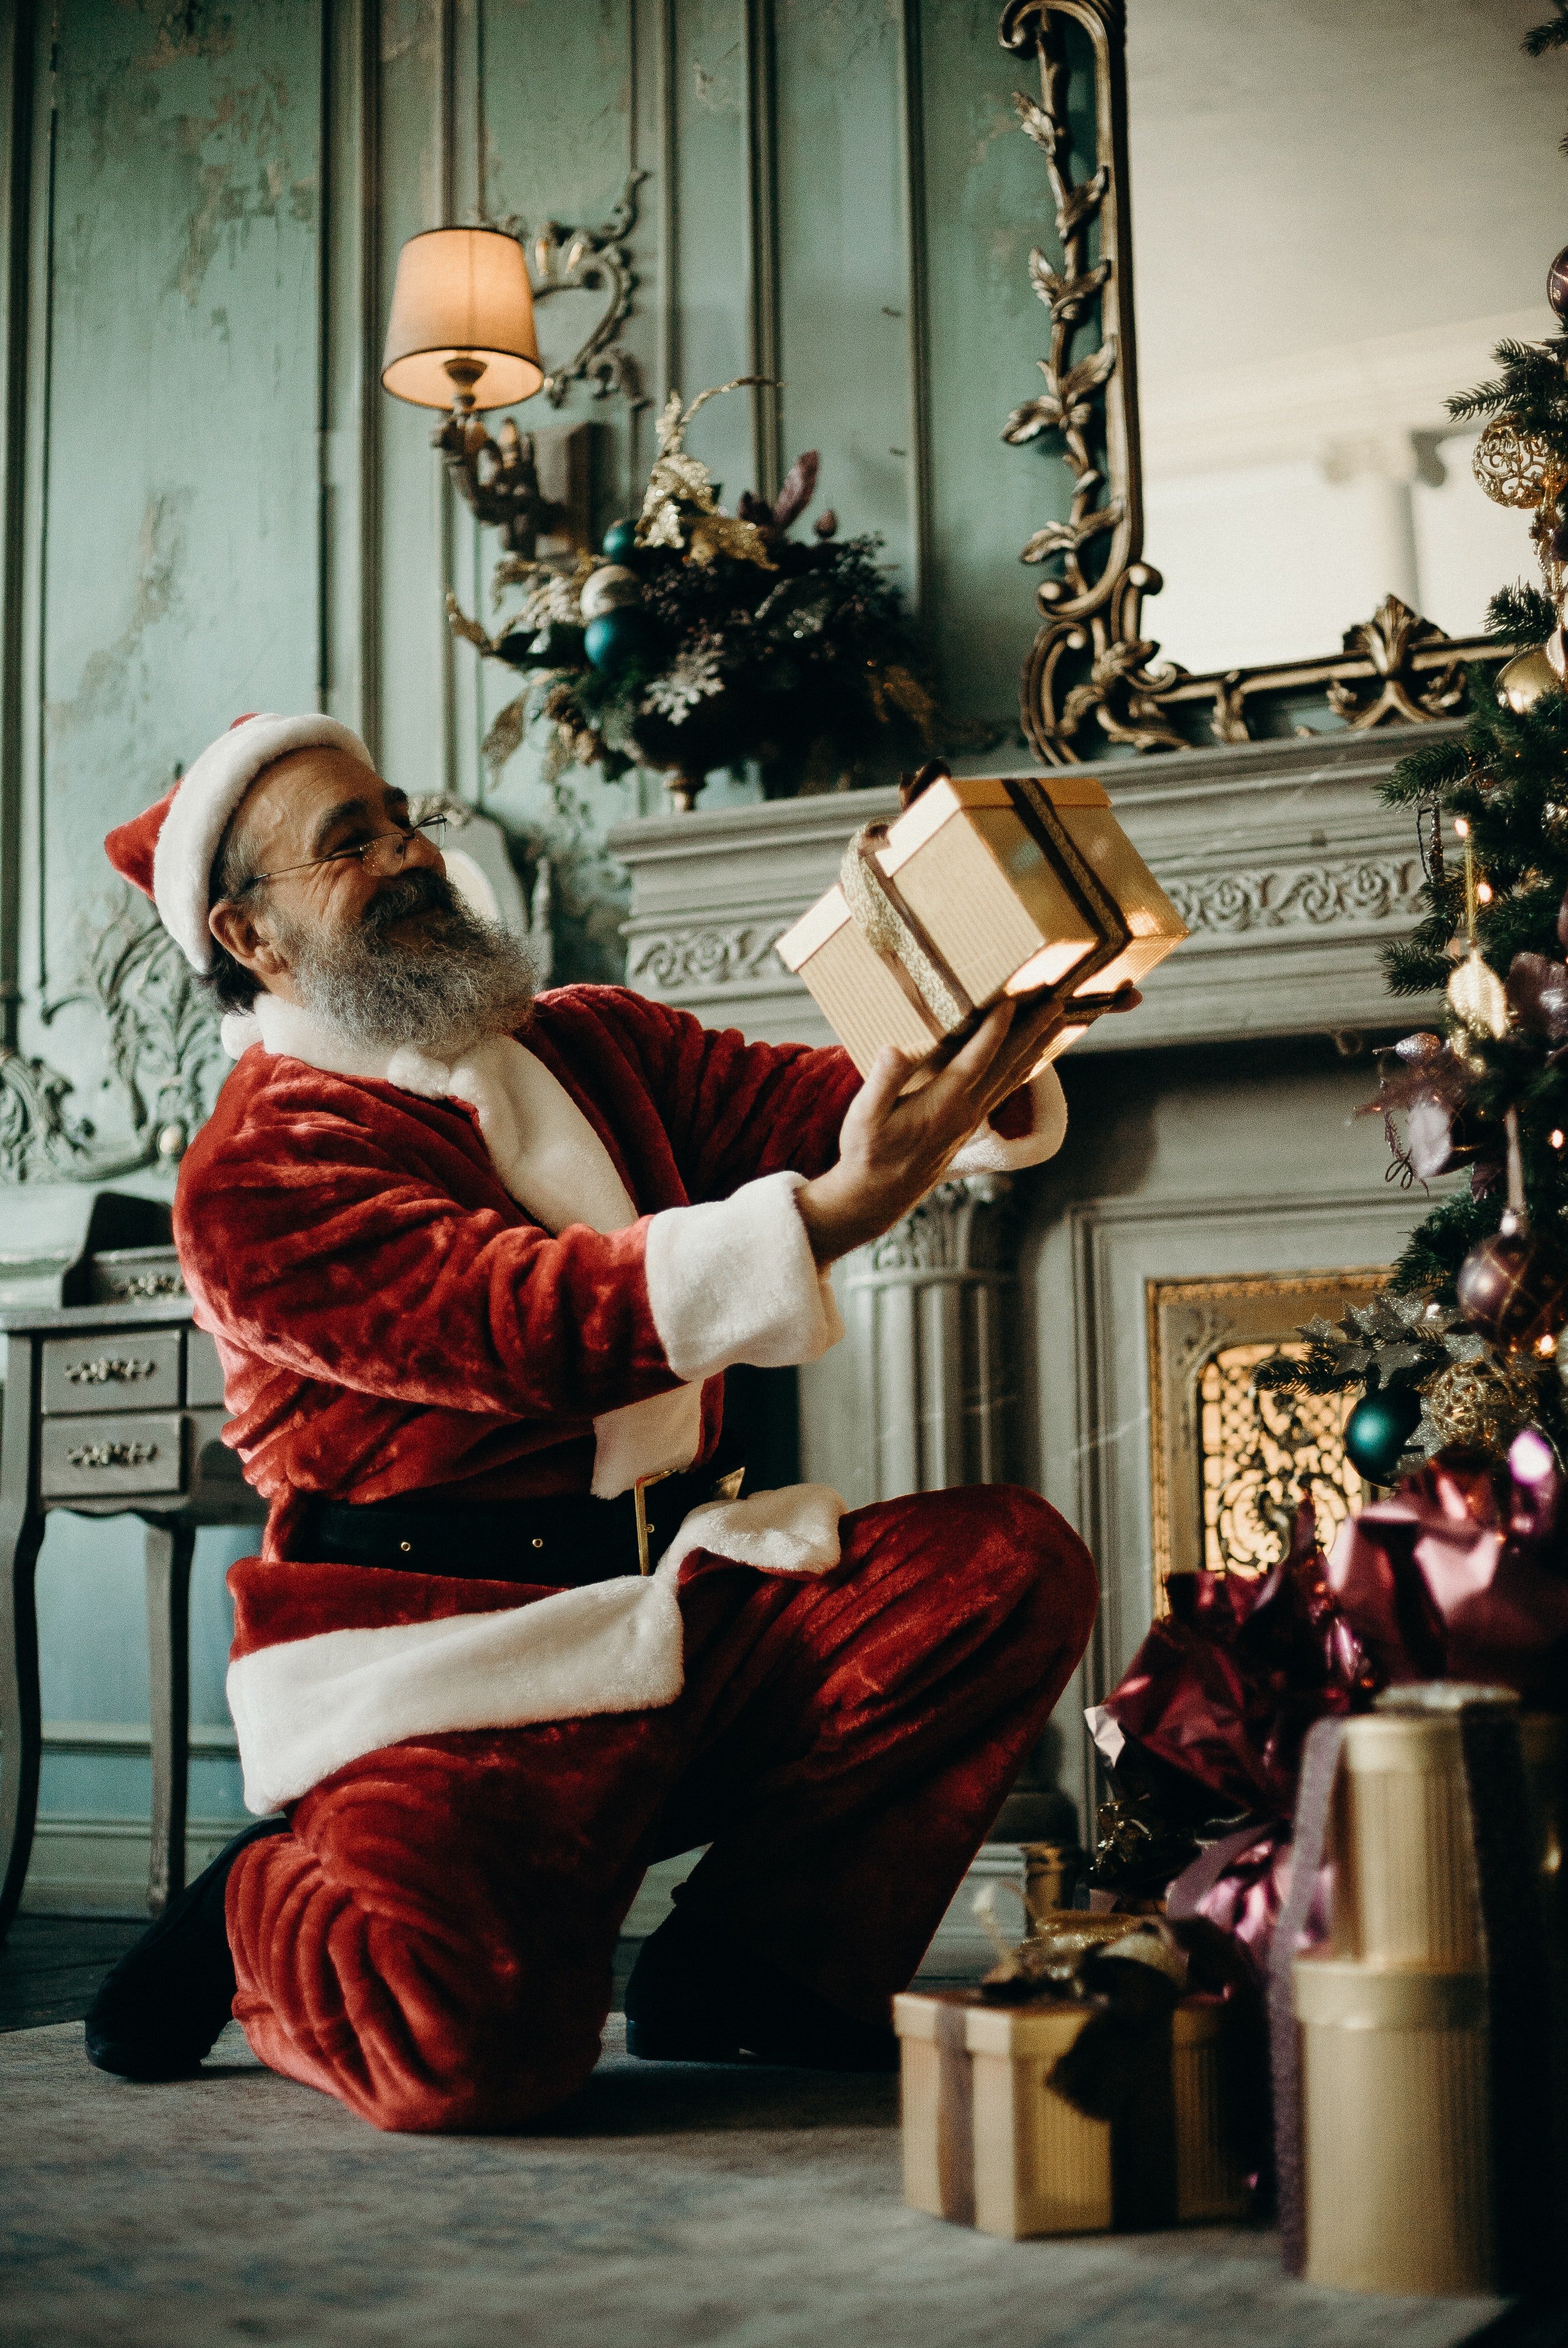 Herr Hauser verkleidete sich als Weihnachtsmann und besuchte Sam und Beatrice | Quelle: Pexels